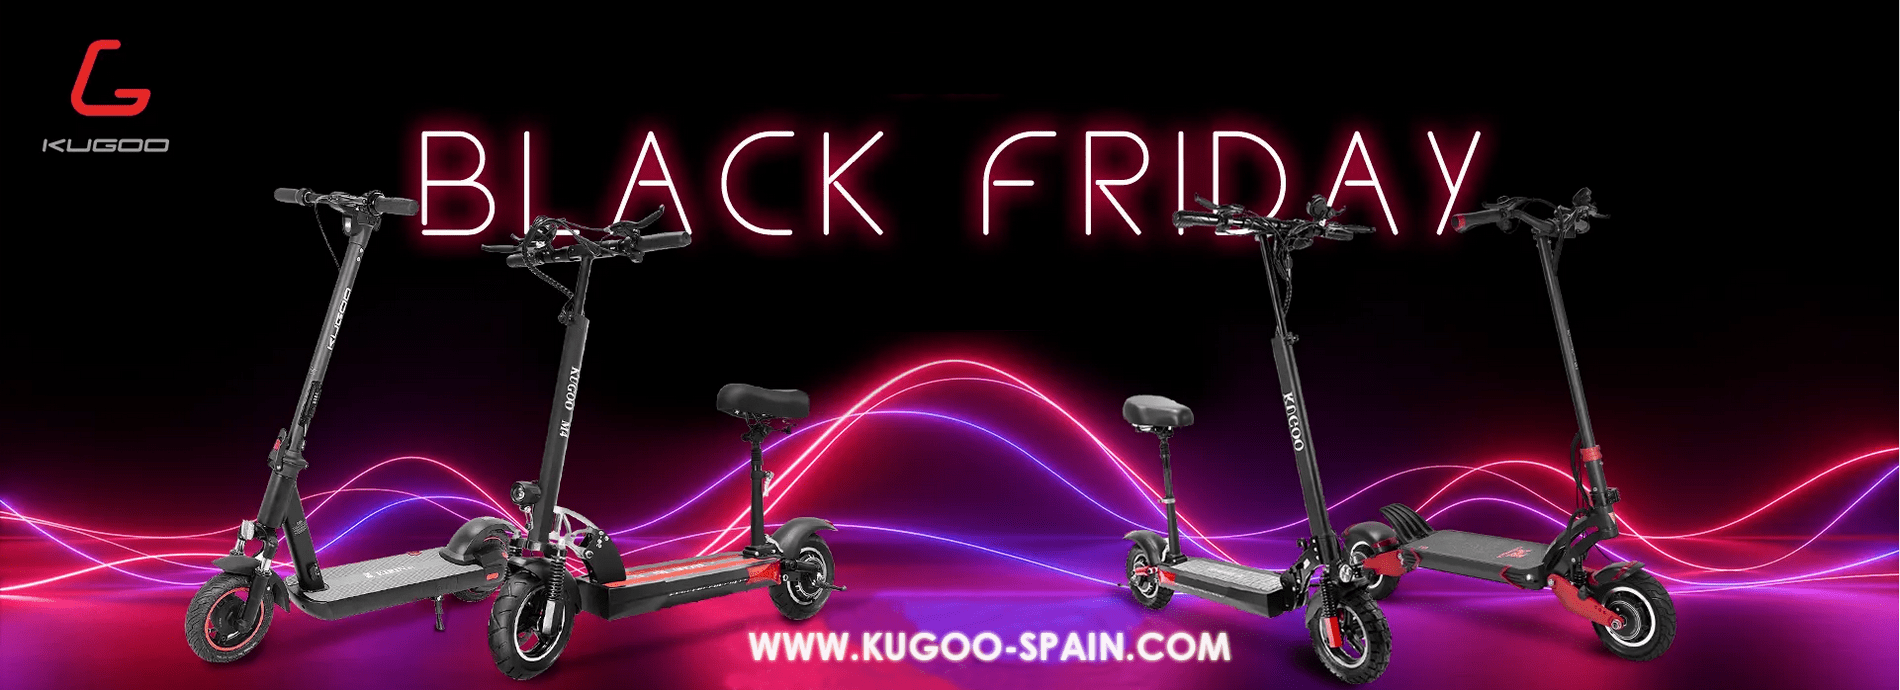 Black Friday en Kugoo Spain